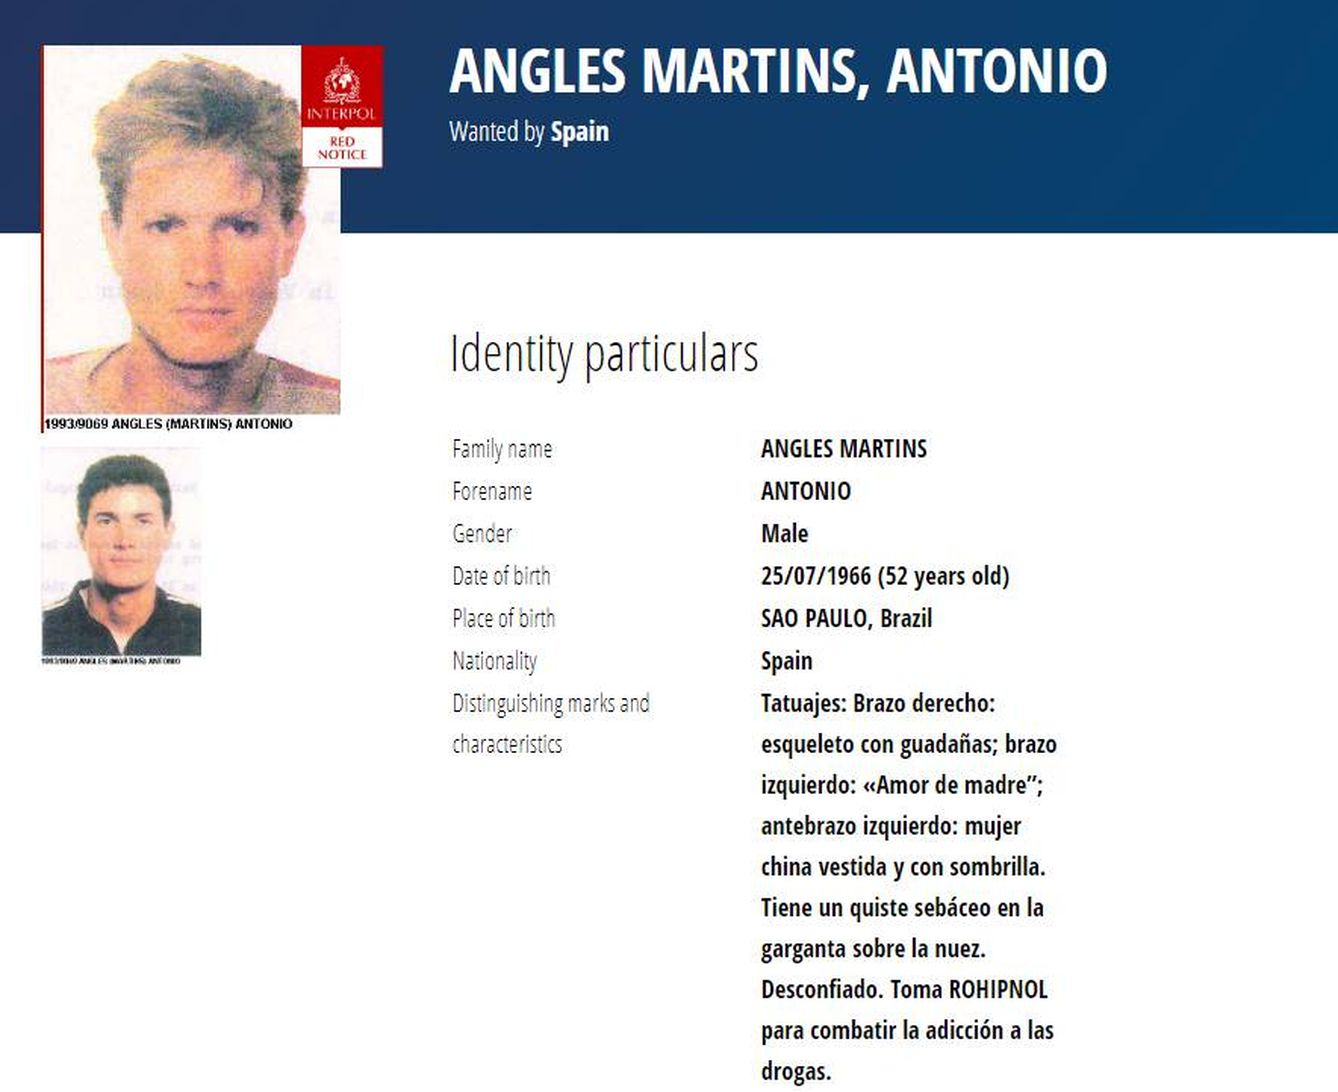 Descripción del perfil y físico de Antonio Anglés. (Interpol)